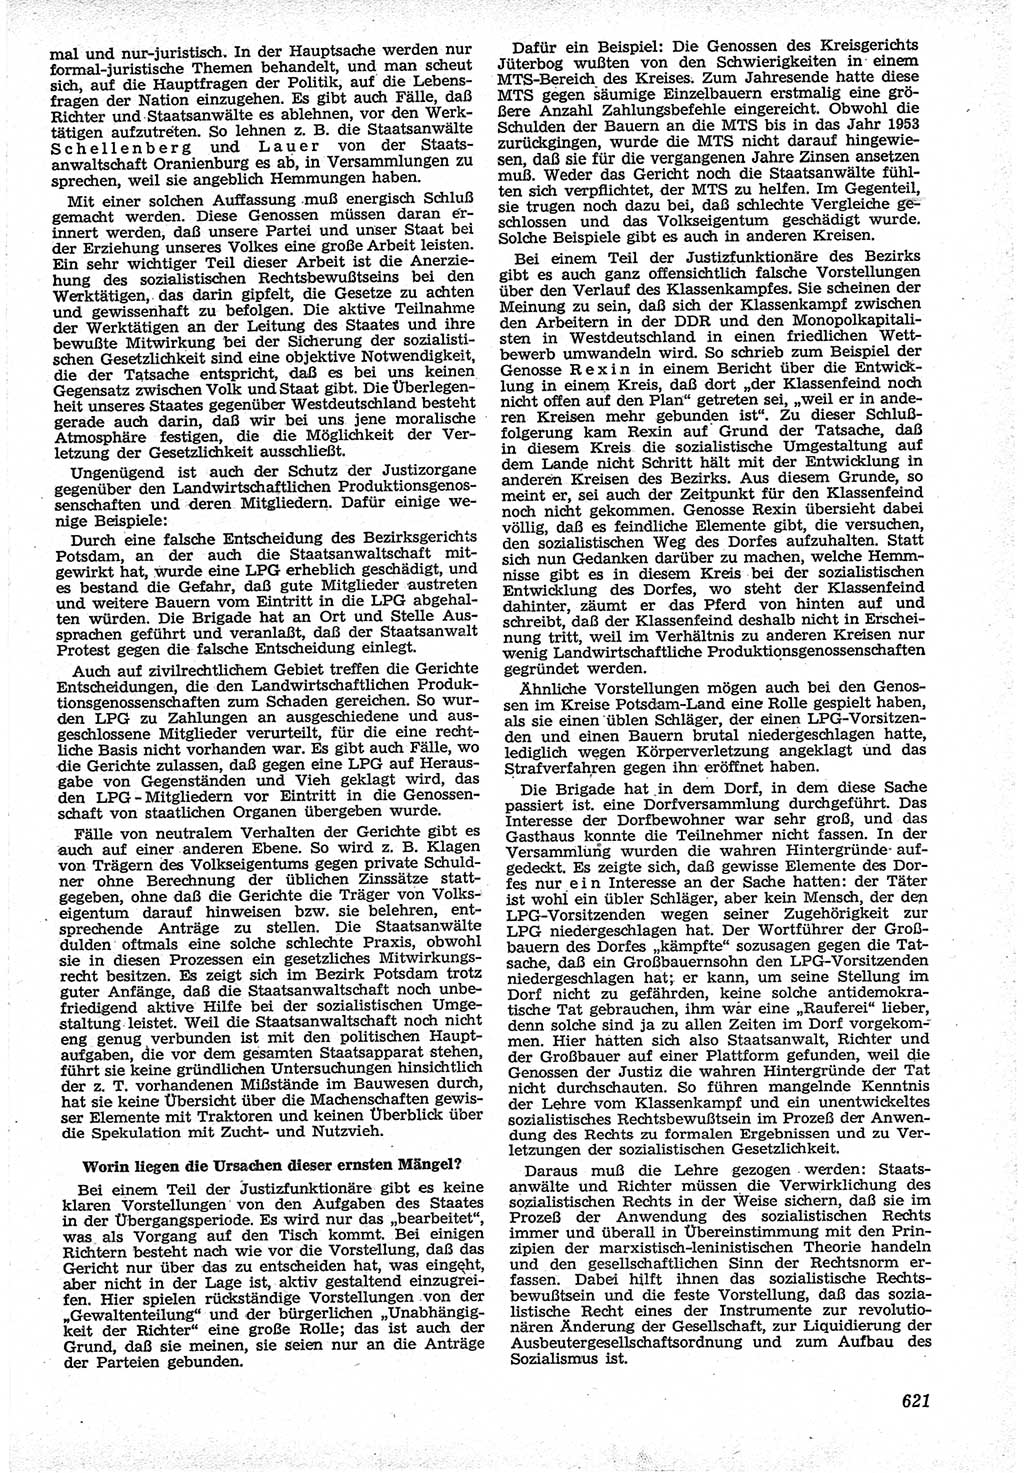 Neue Justiz (NJ), Zeitschrift für Recht und Rechtswissenschaft [Deutsche Demokratische Republik (DDR)], 12. Jahrgang 1958, Seite 621 (NJ DDR 1958, S. 621)